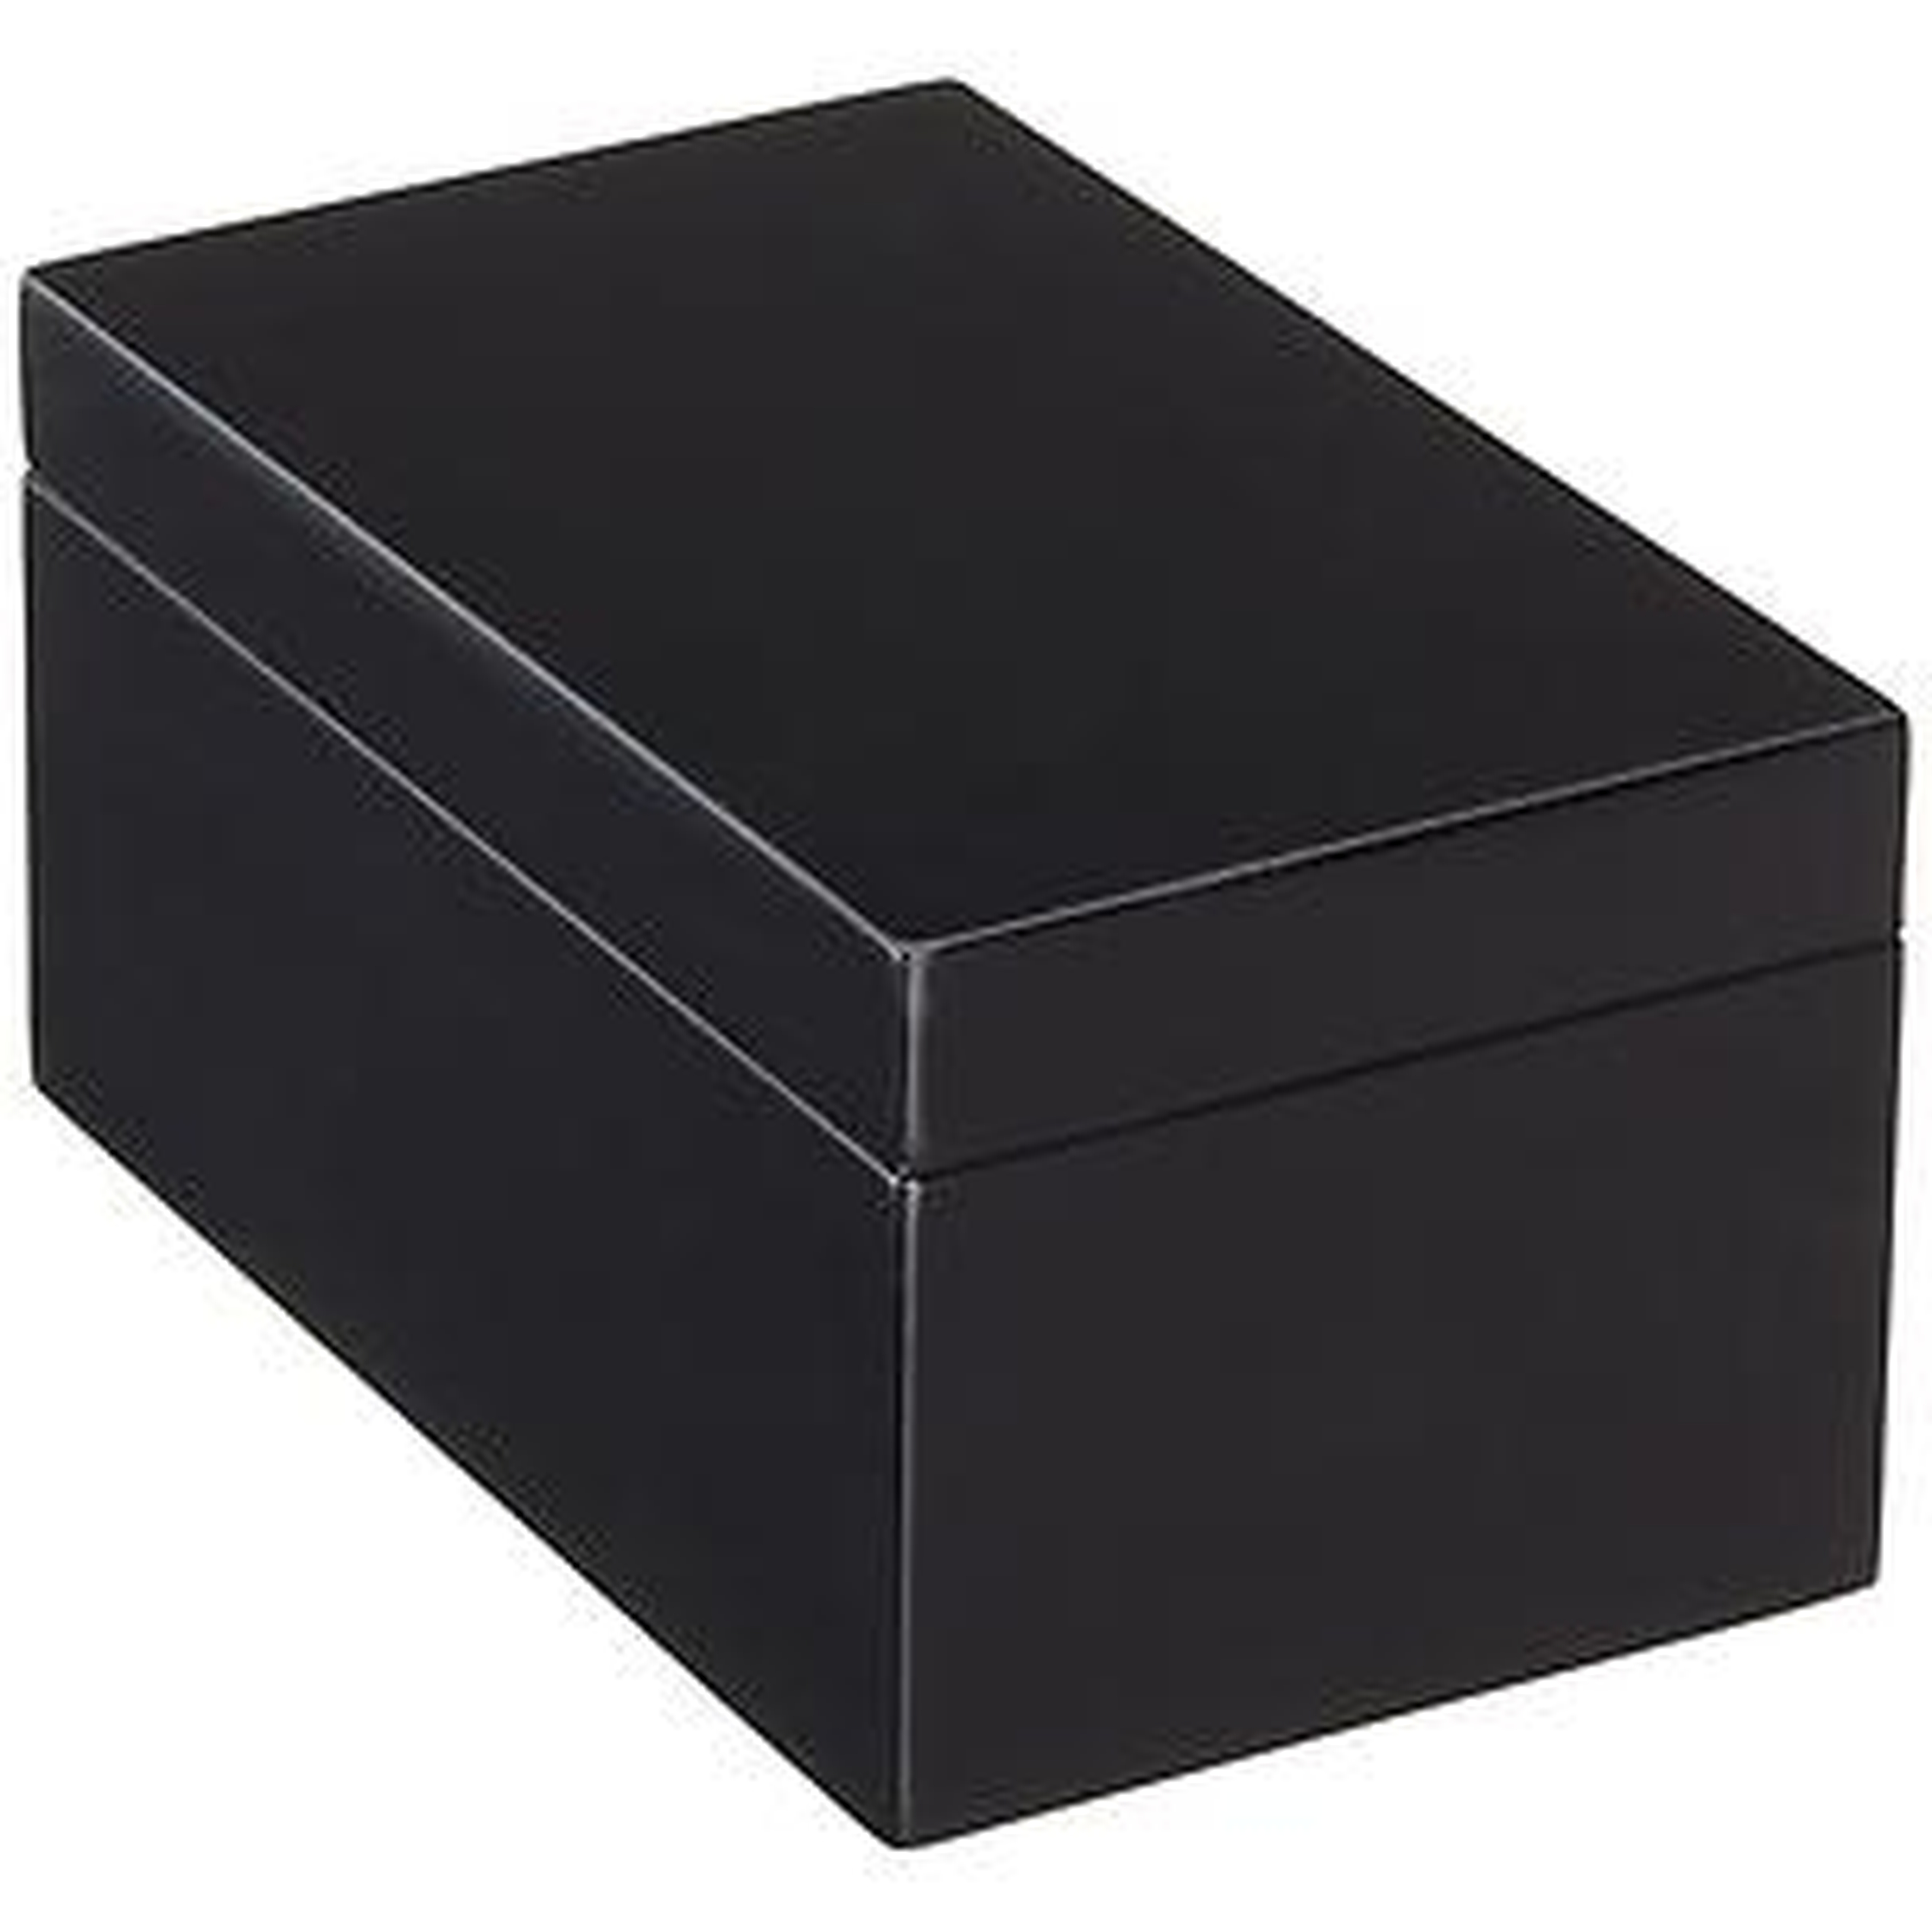 Medium Lacquered Rectangular Box Black - containerstore.com